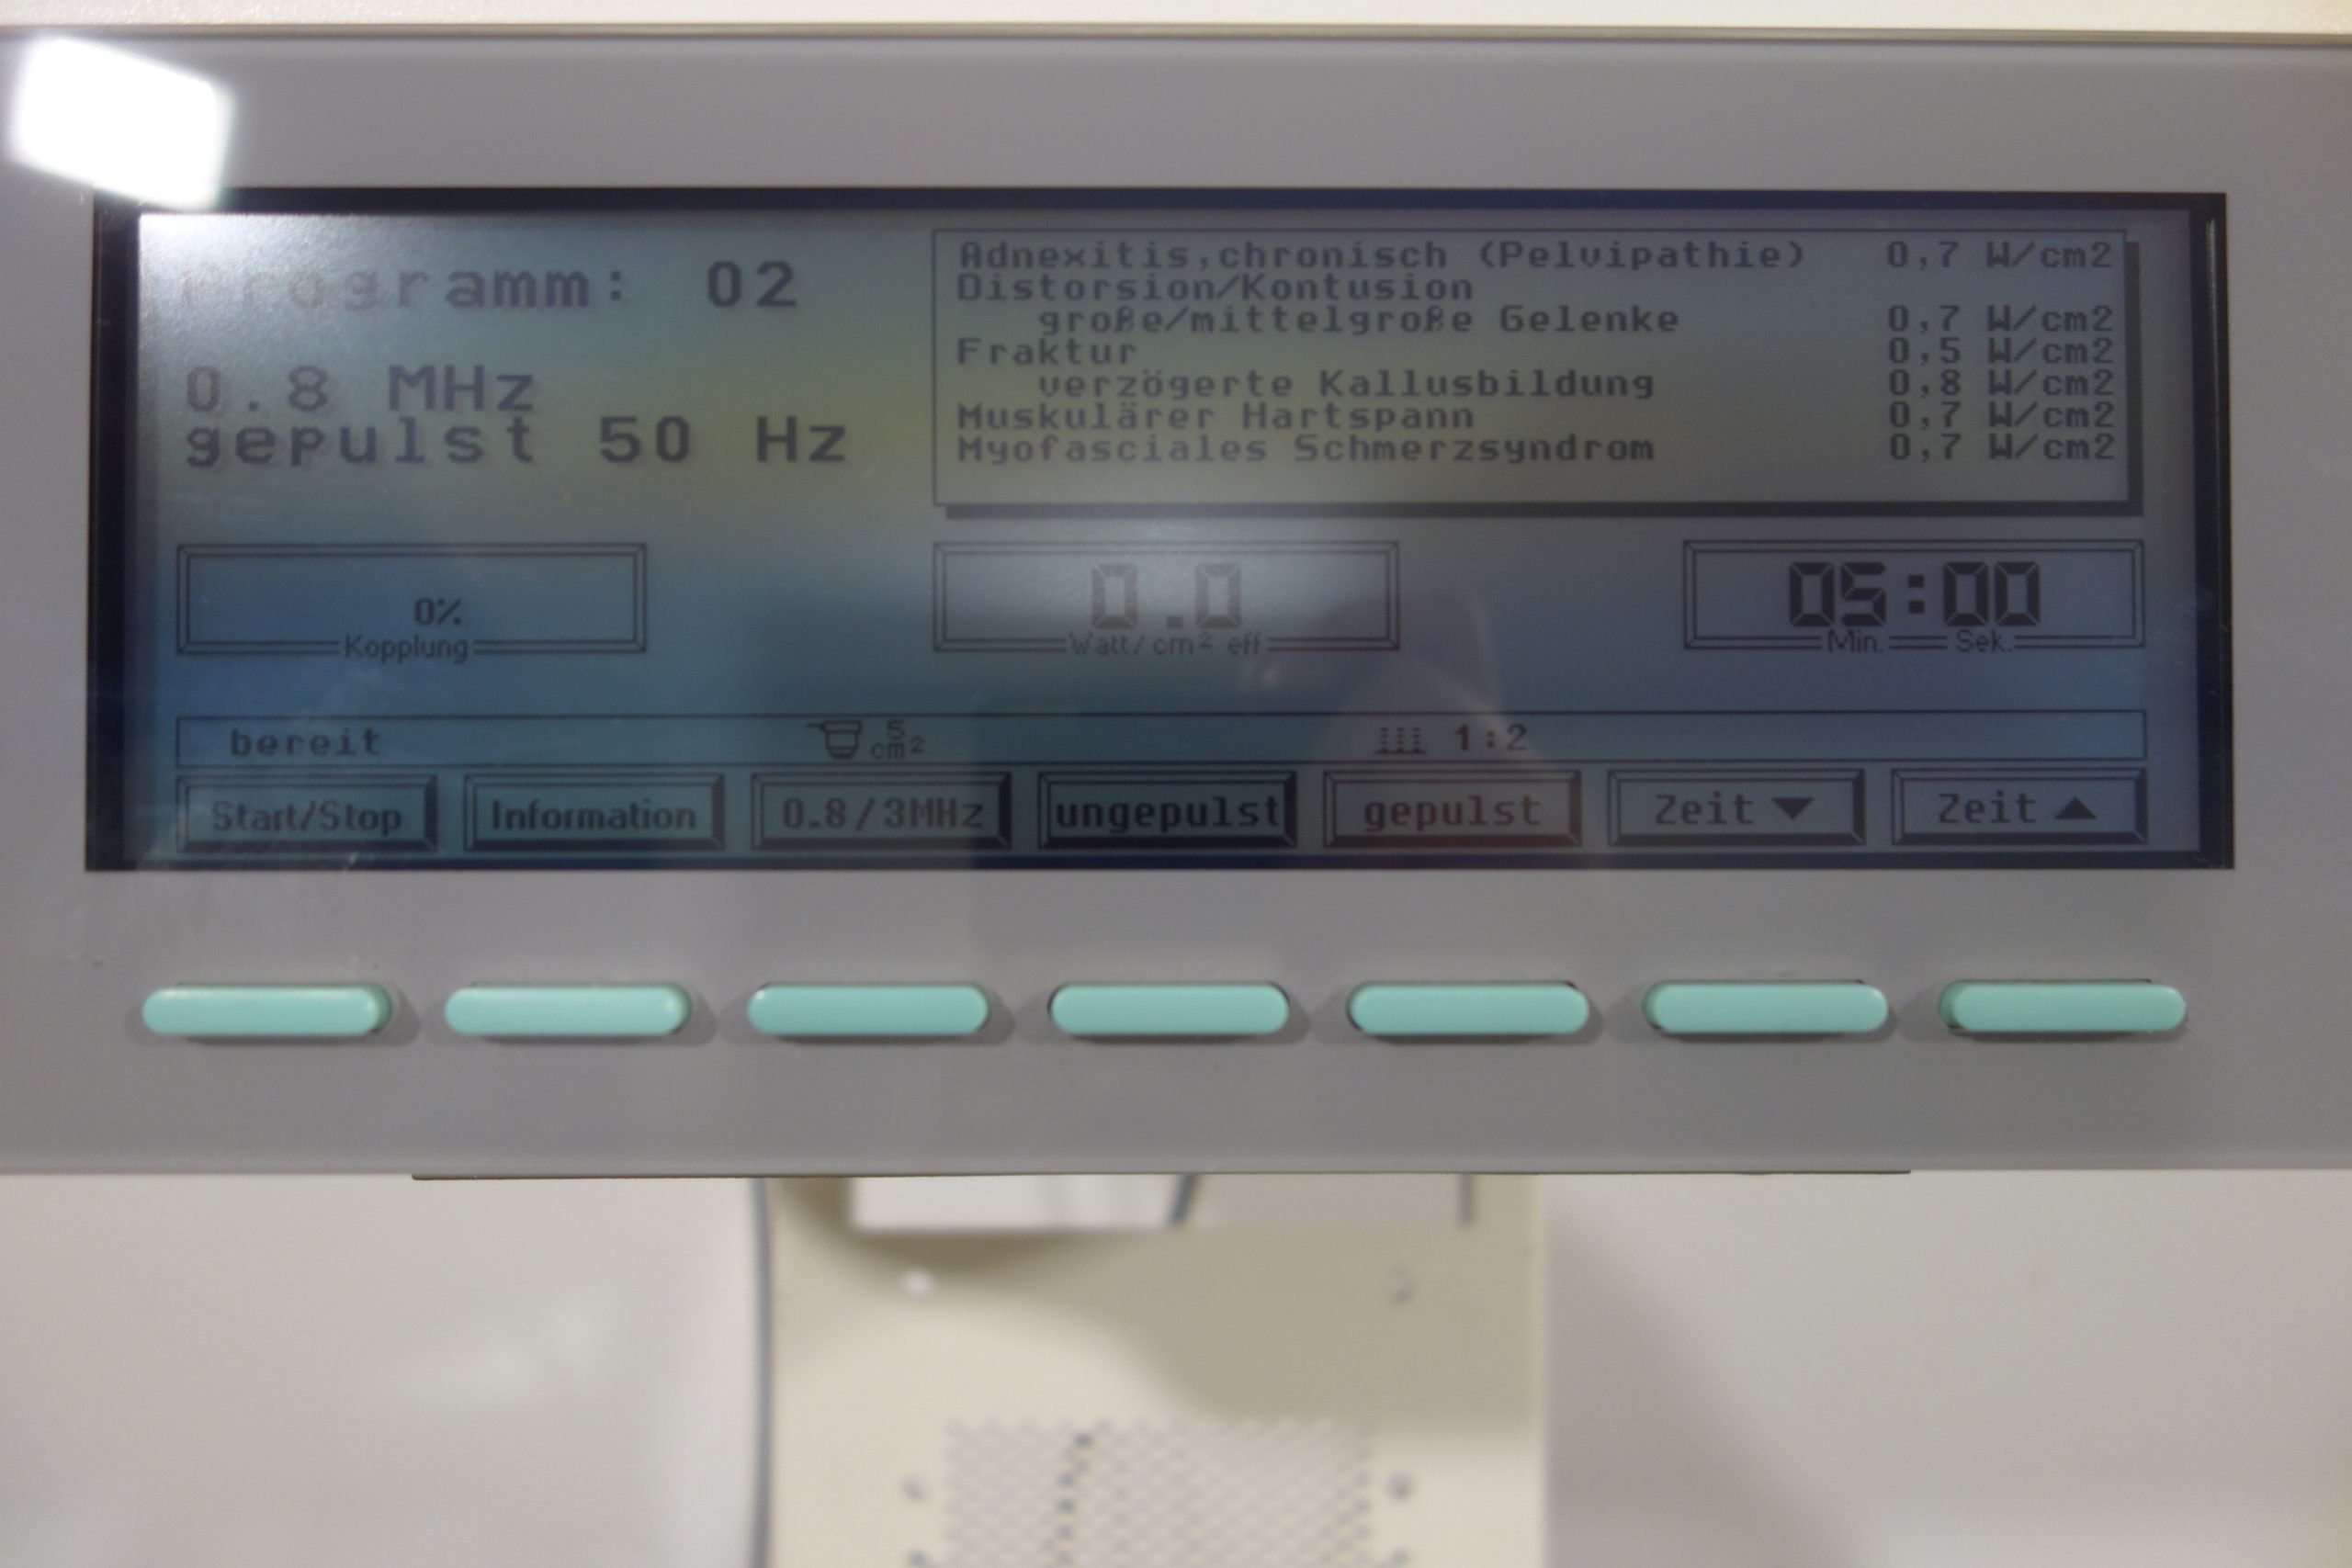 zimmer-sono-5-mit-3-mhz-und-0-8-mhz-sonde-auf-fahrgstell-02